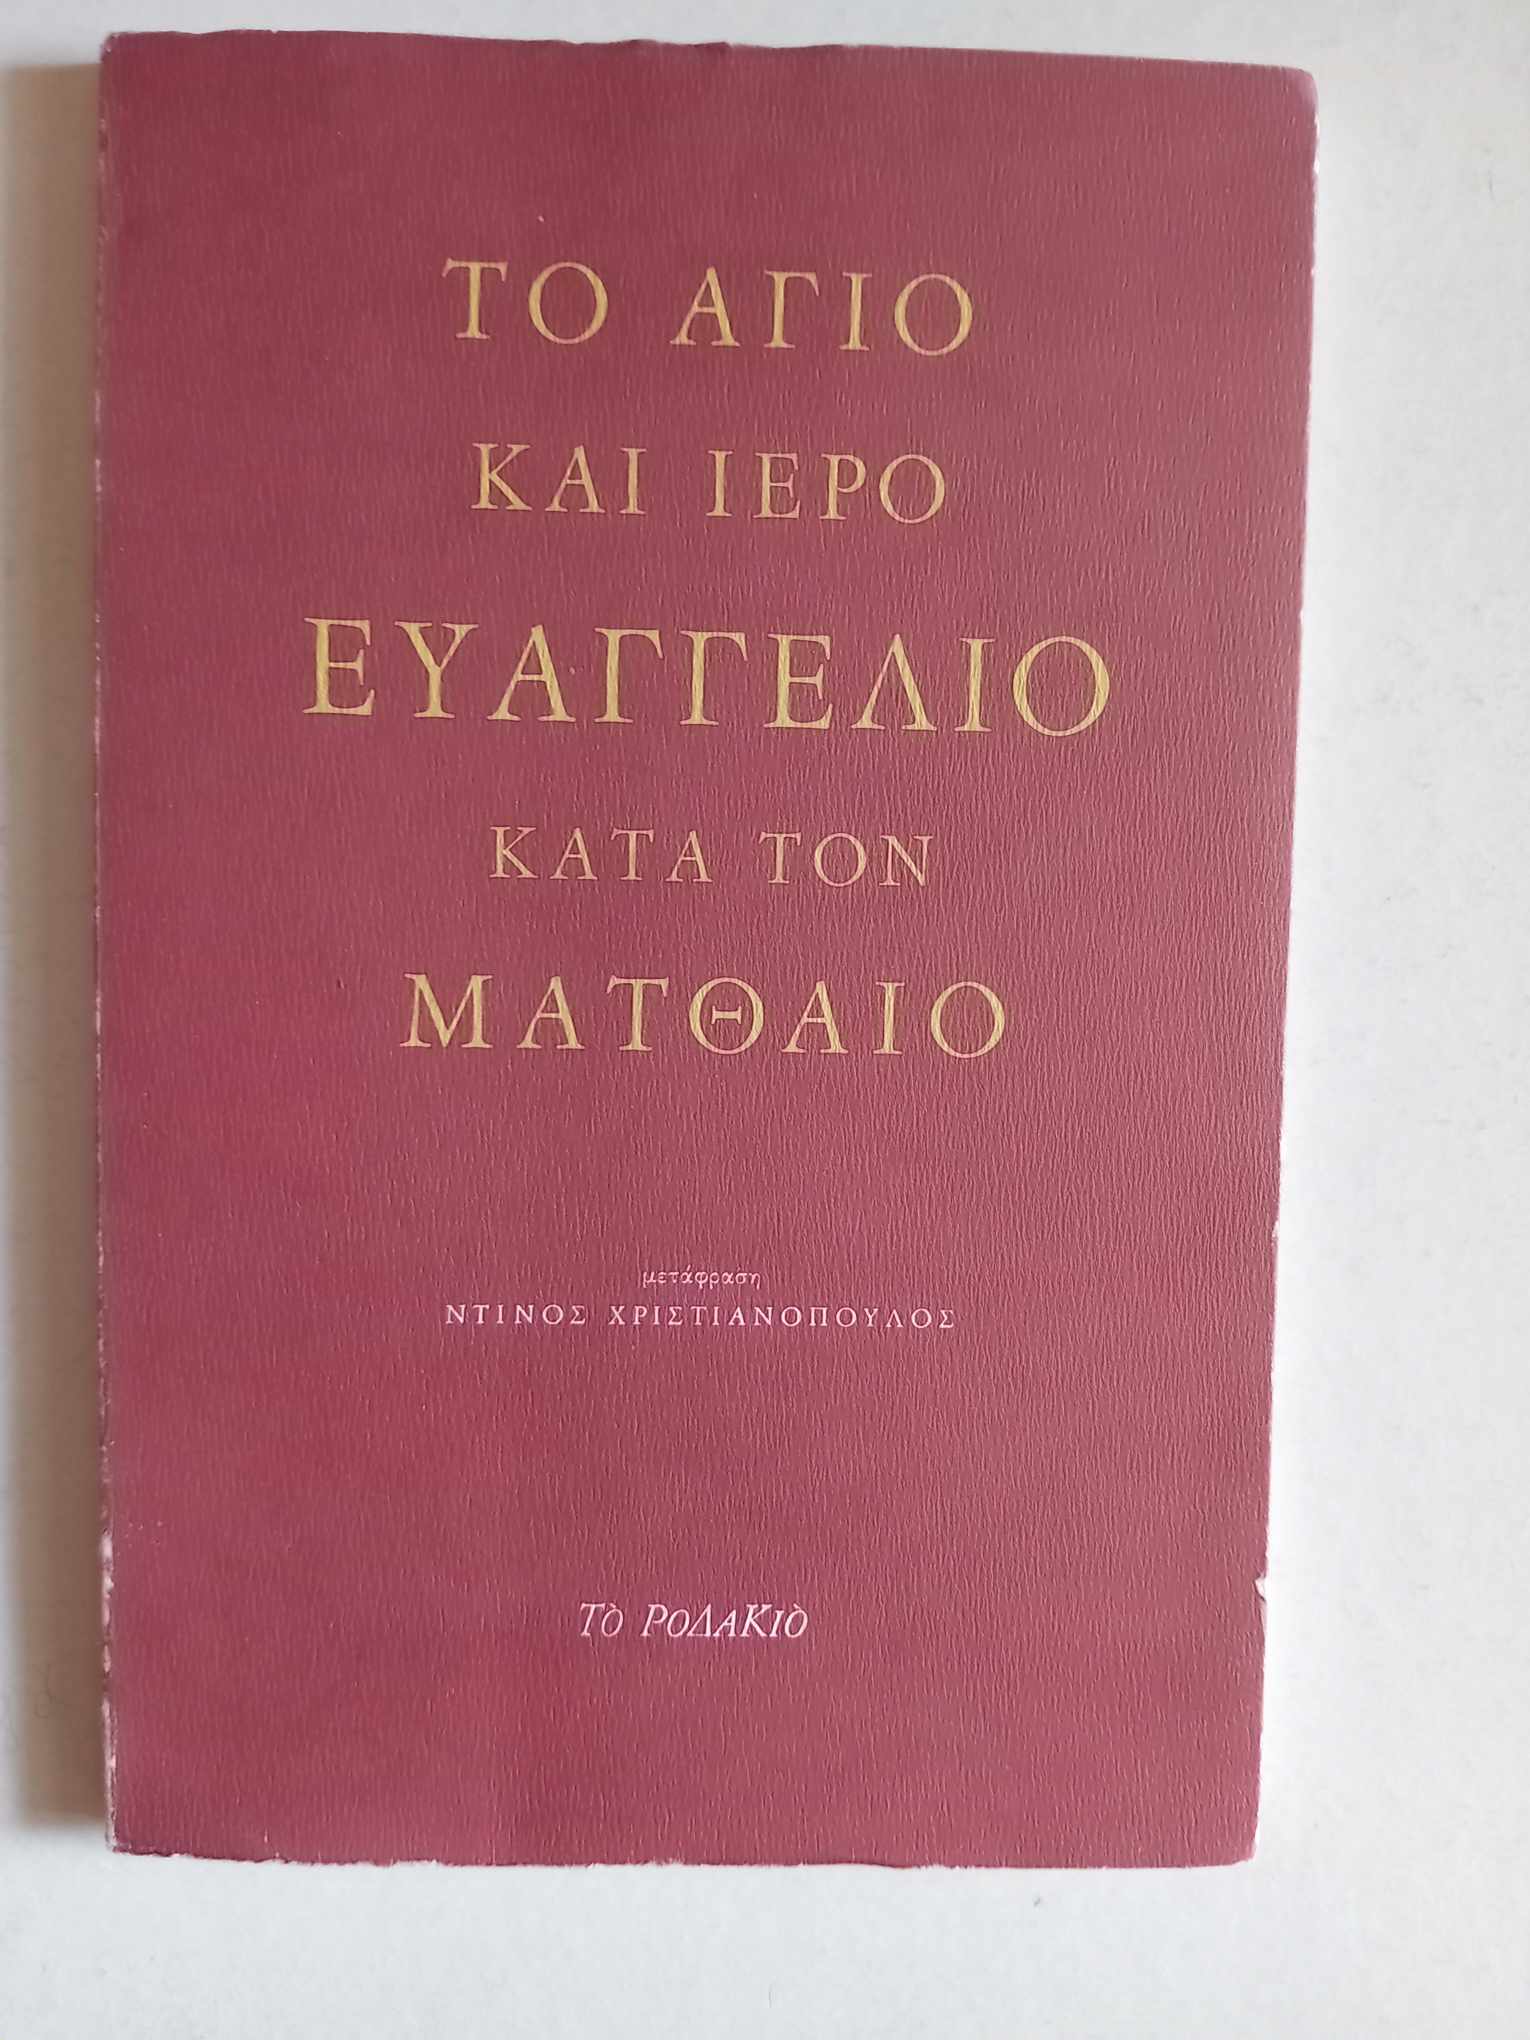 Το άγιο και ιερό ευαγγέλιο κατά τον Ματθαίο Ντίνος Χριστιανόπουλος Το Ροδακιό 1996